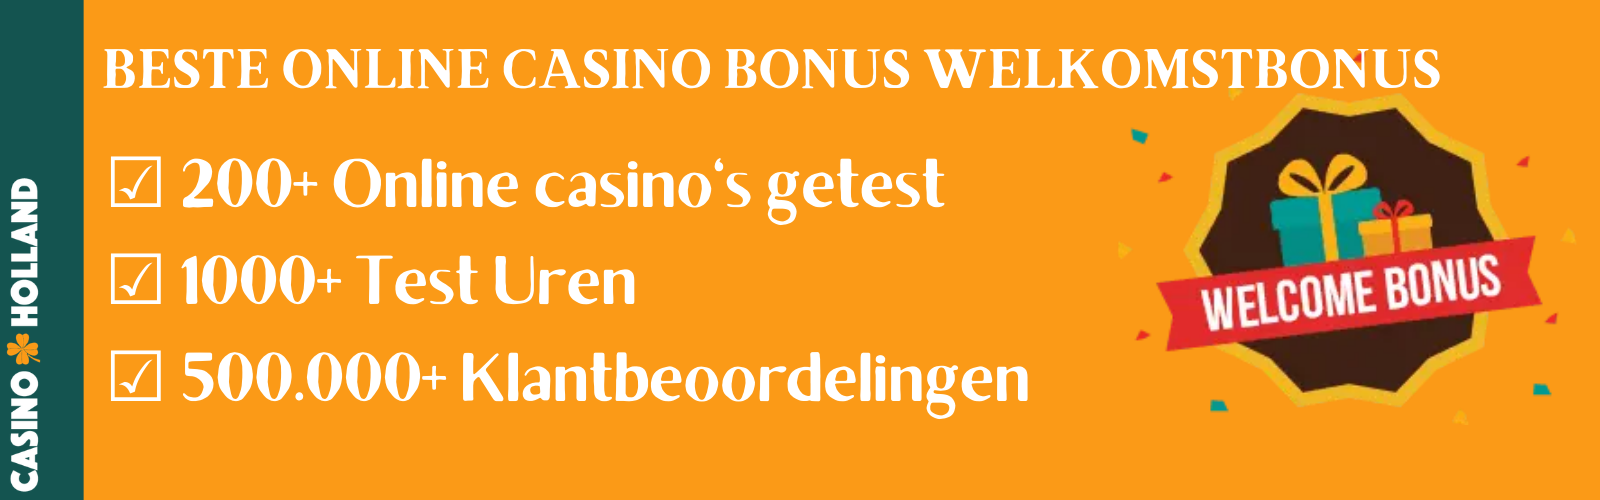 Beste Online Casino Welkomstbonus